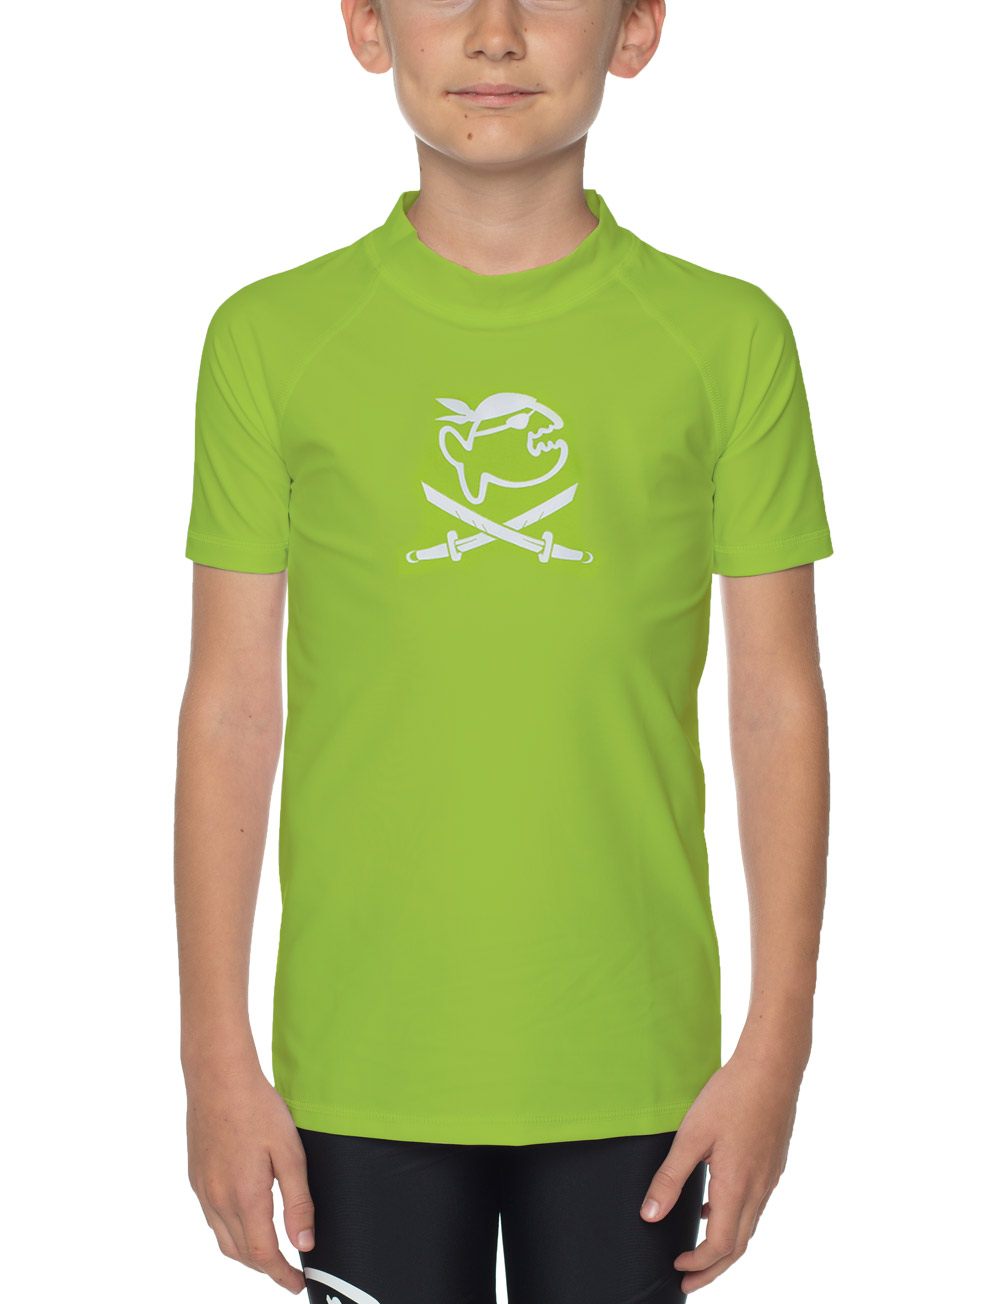 Shirt für Kinder Econyl aus recyceltem Material neon grün Piraten